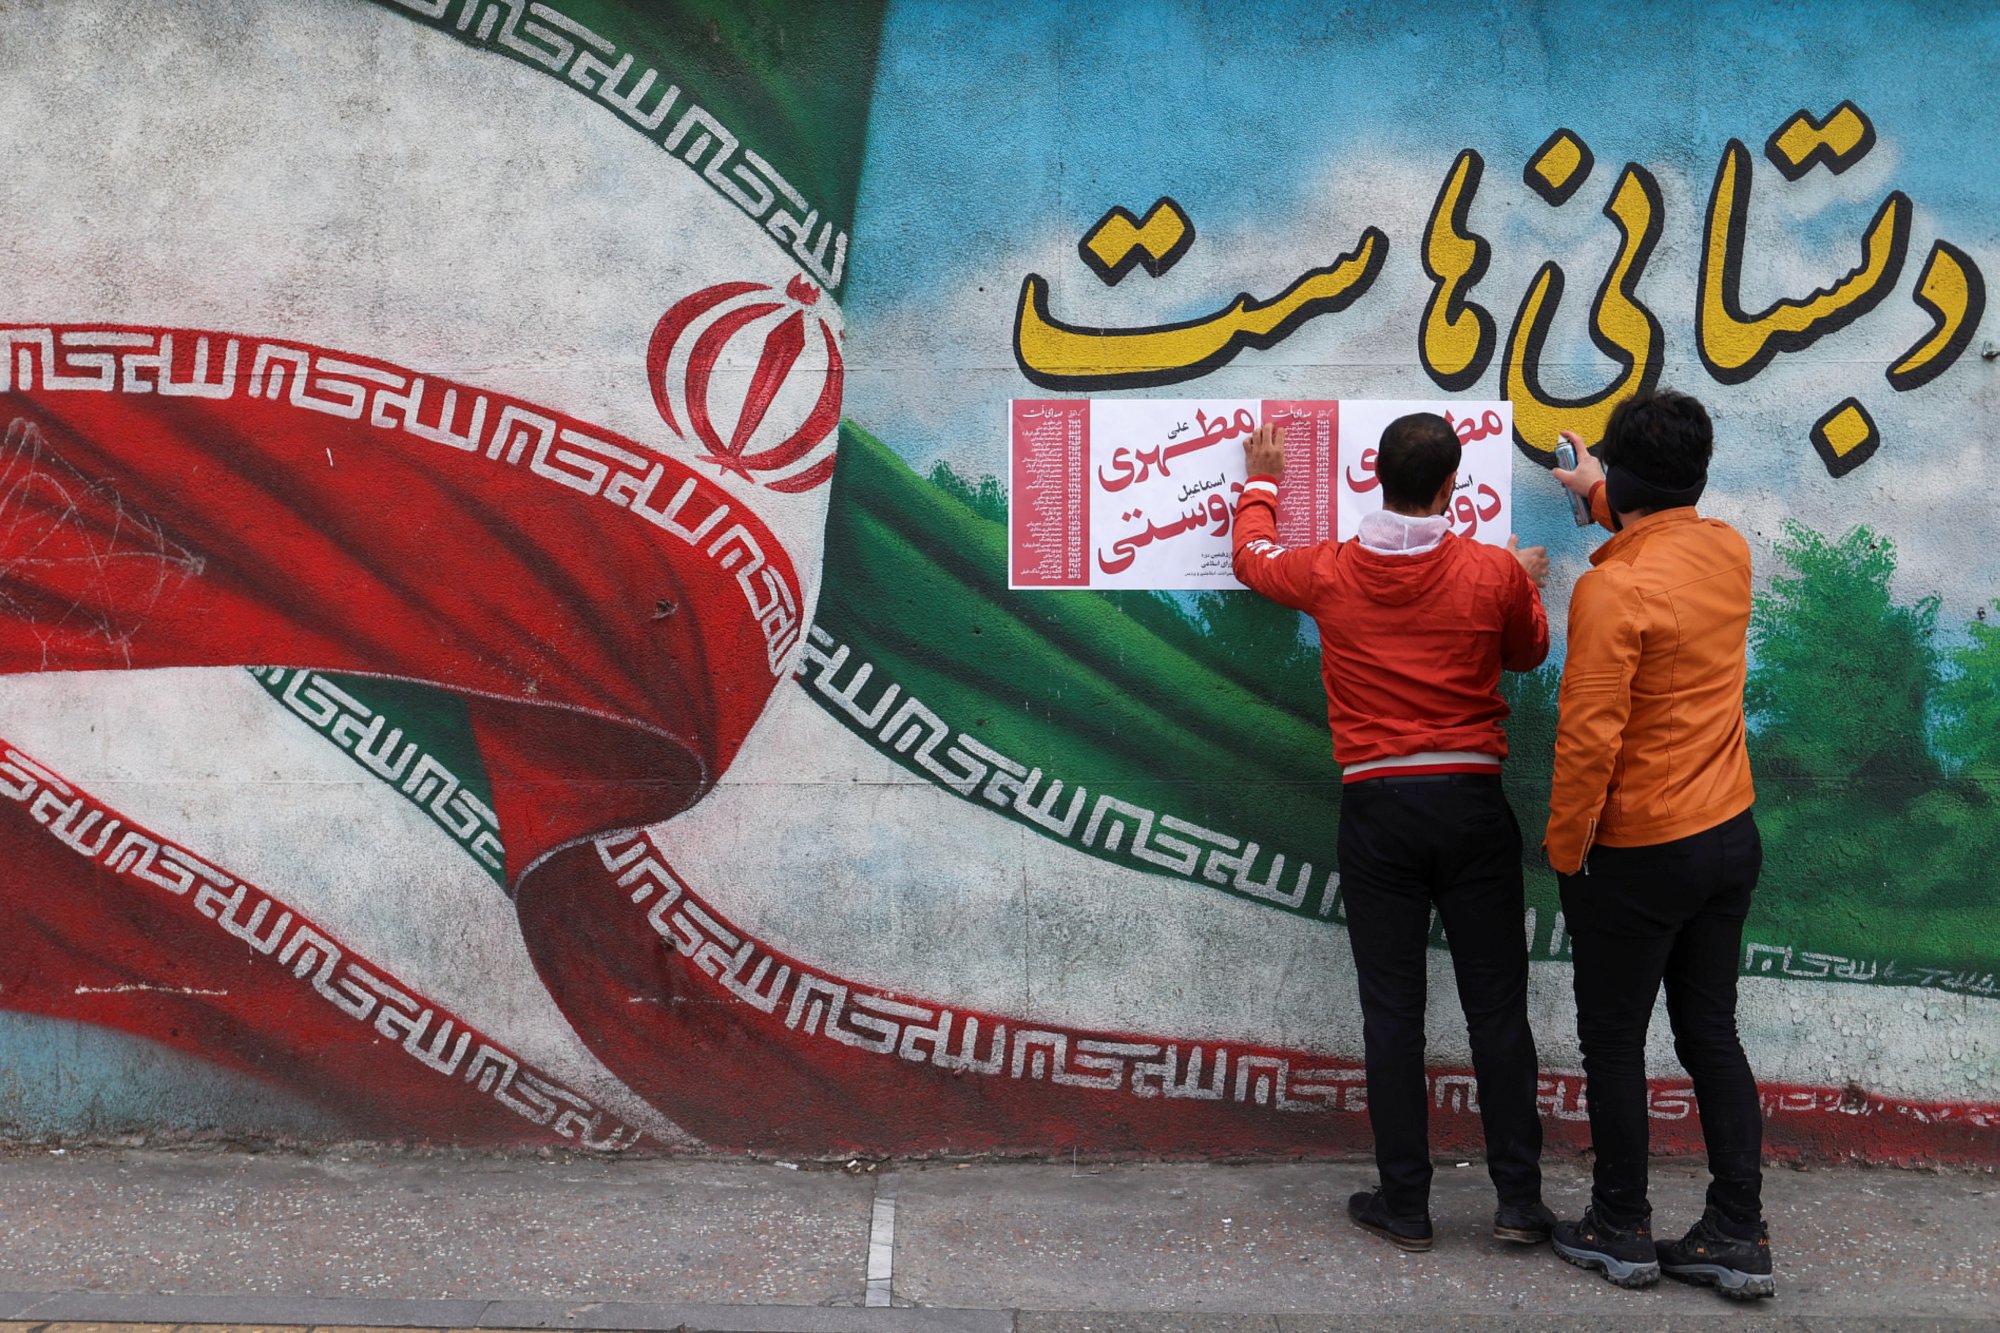 Άνοιξαν οι κάλπες για τις βουλευτικές εκλογές στο Ιράν - Βασικό θέμα της ατζέντας η οικονομία